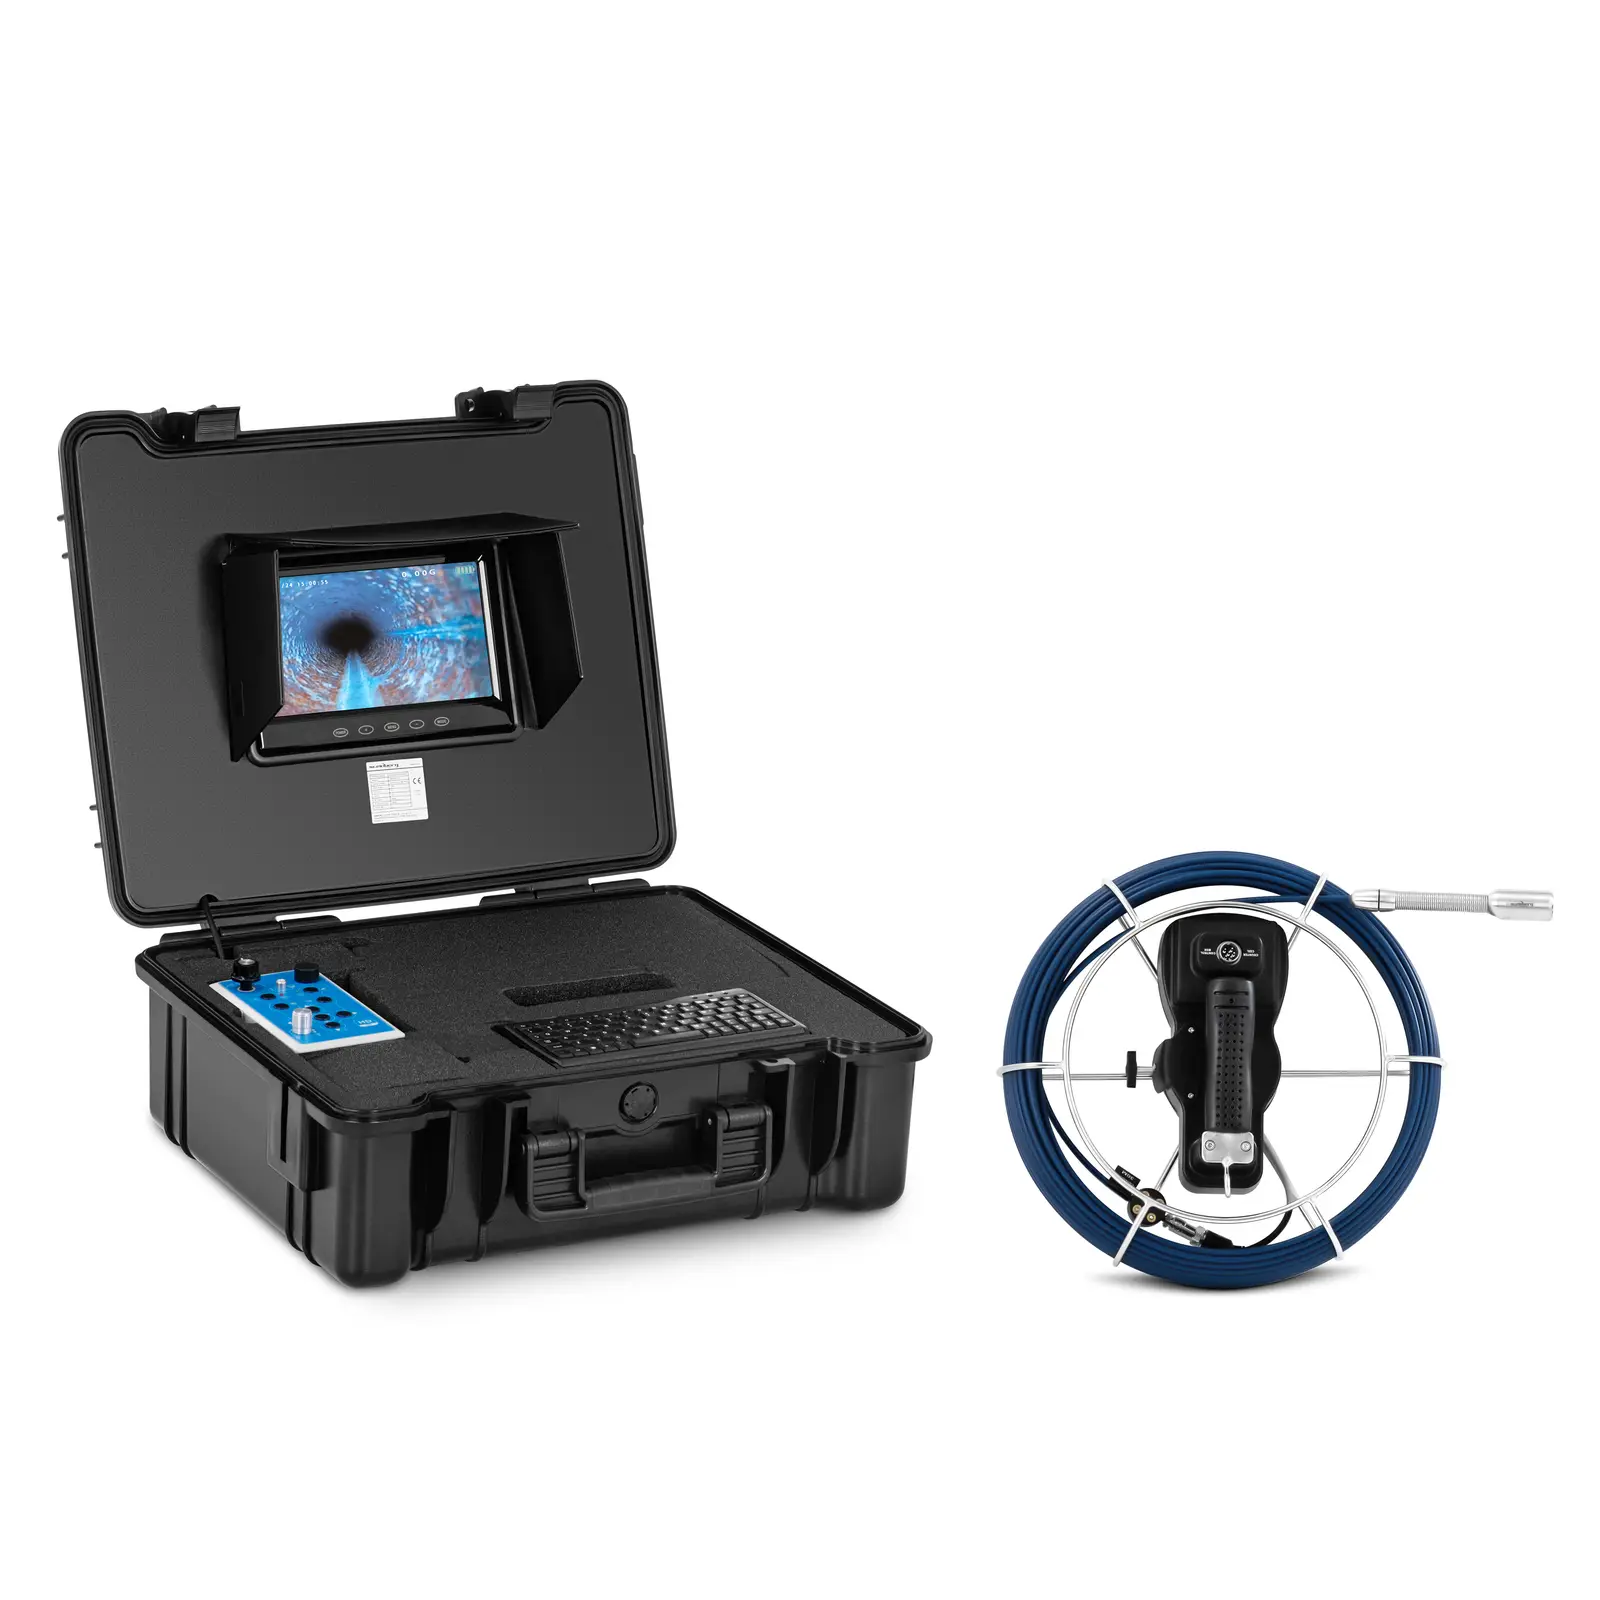 Caméra inspection canalisation - 30 m - 12 LED - Écran tactile couleur TFT 7 pouces